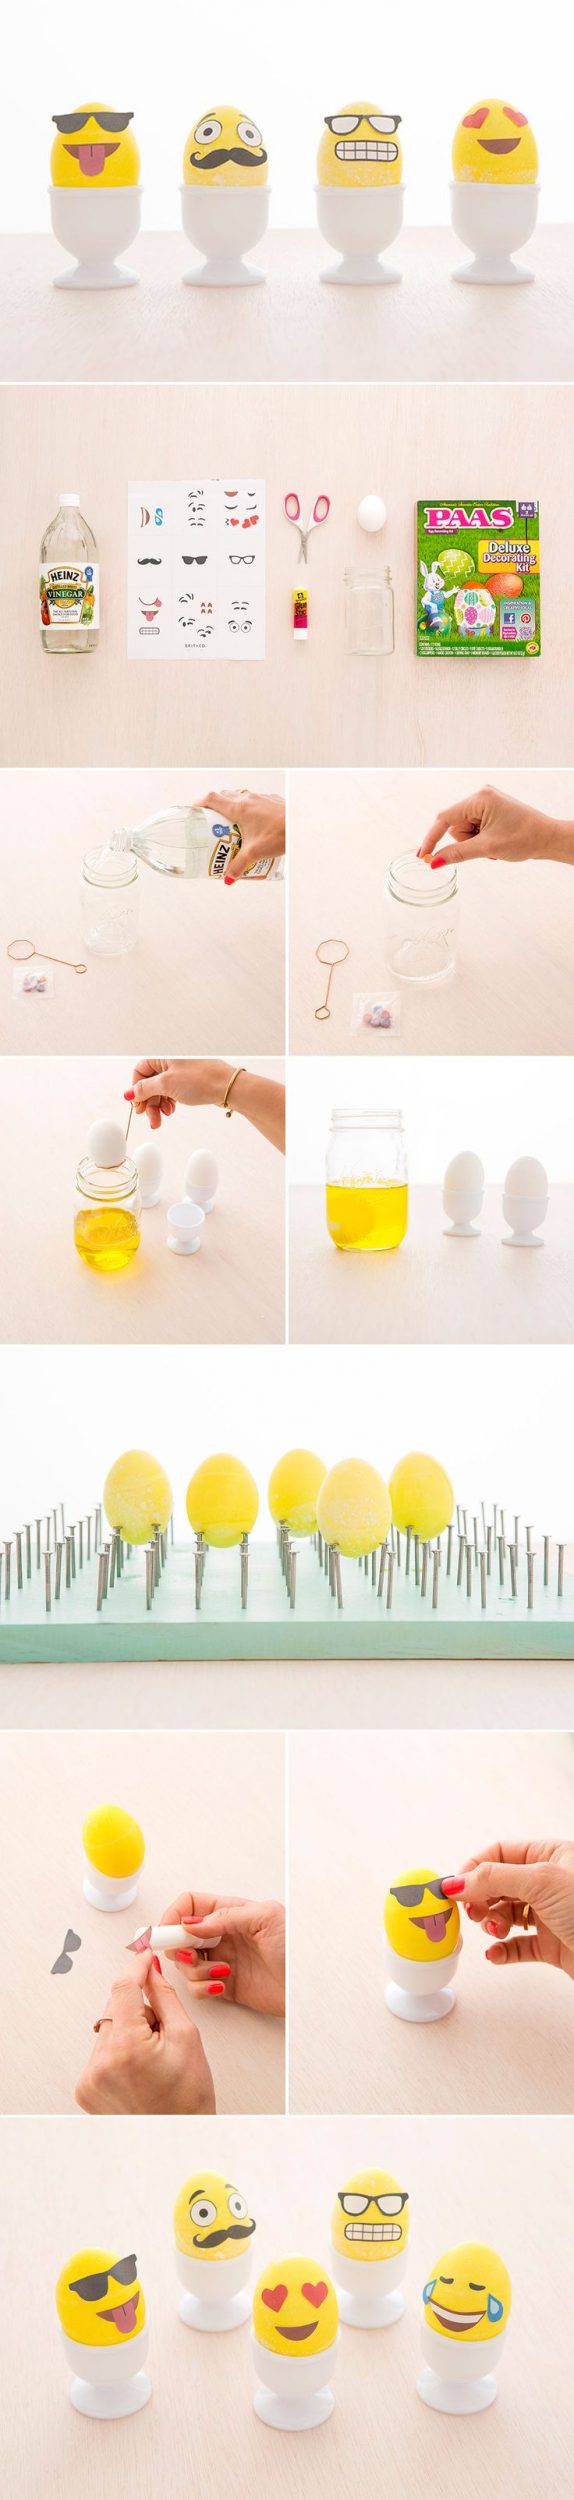 Emoji Easter Eggs: DIY tutorial + șablon gratuit pentru imprimare